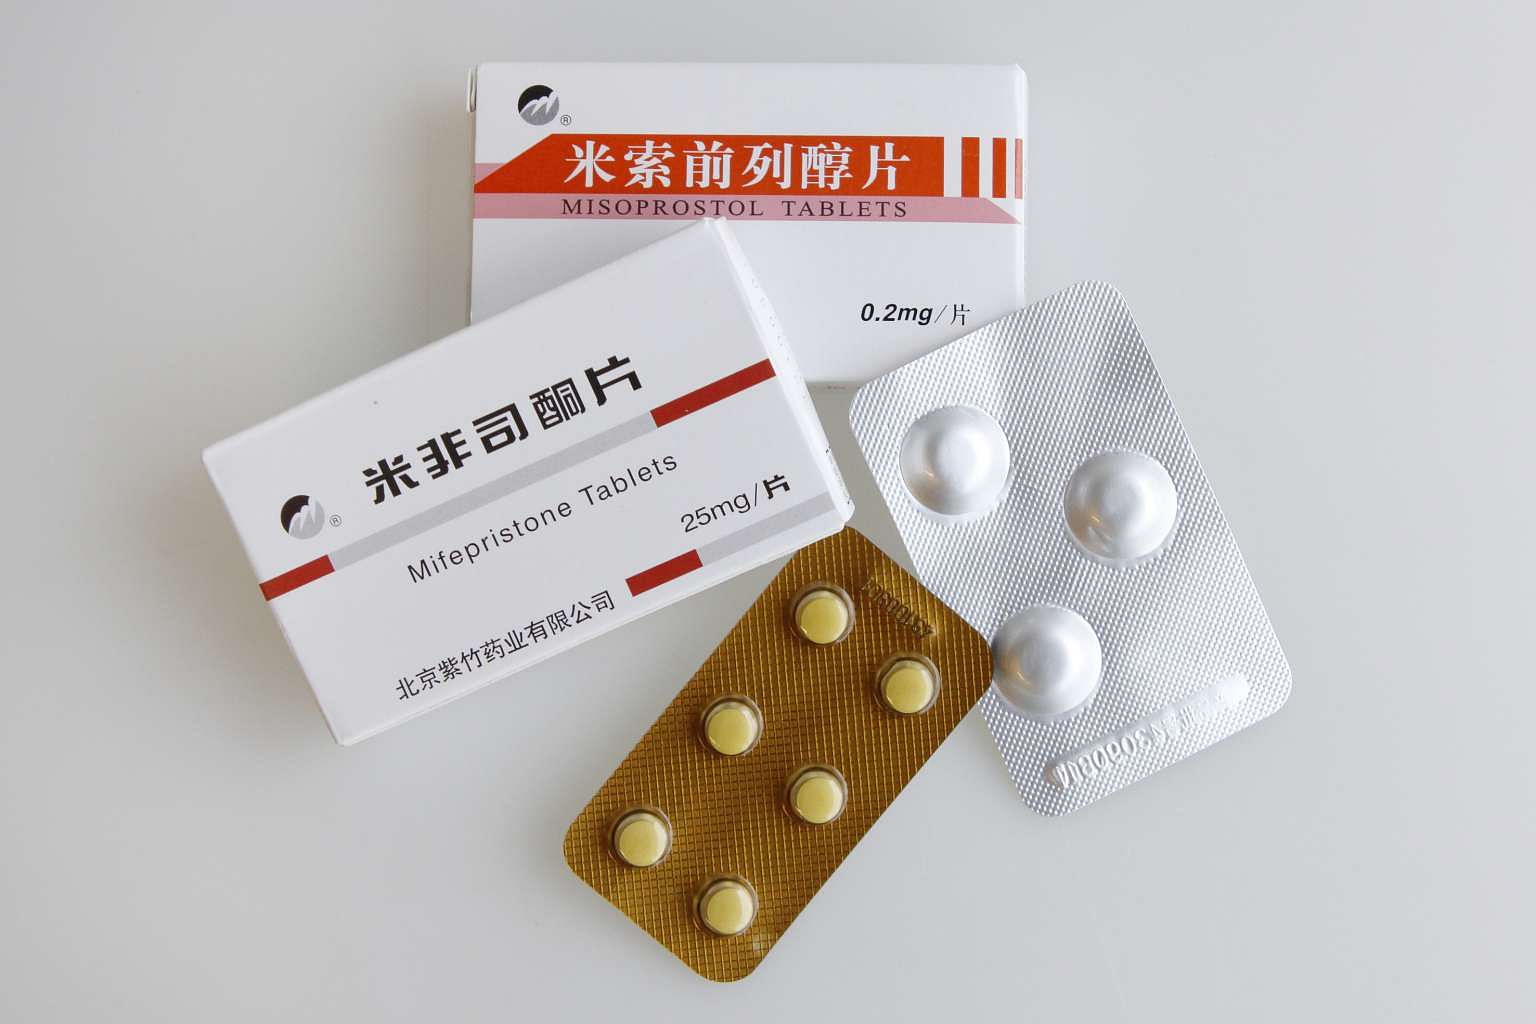 Таблетка до 6 недель цена. Таблетки китайские misoprostol. Китайские таблетки аборт мифепристон. Китайская таблетка для прерывания беременности мифепристон. Мифепристон 25 мг китайские таблетки.